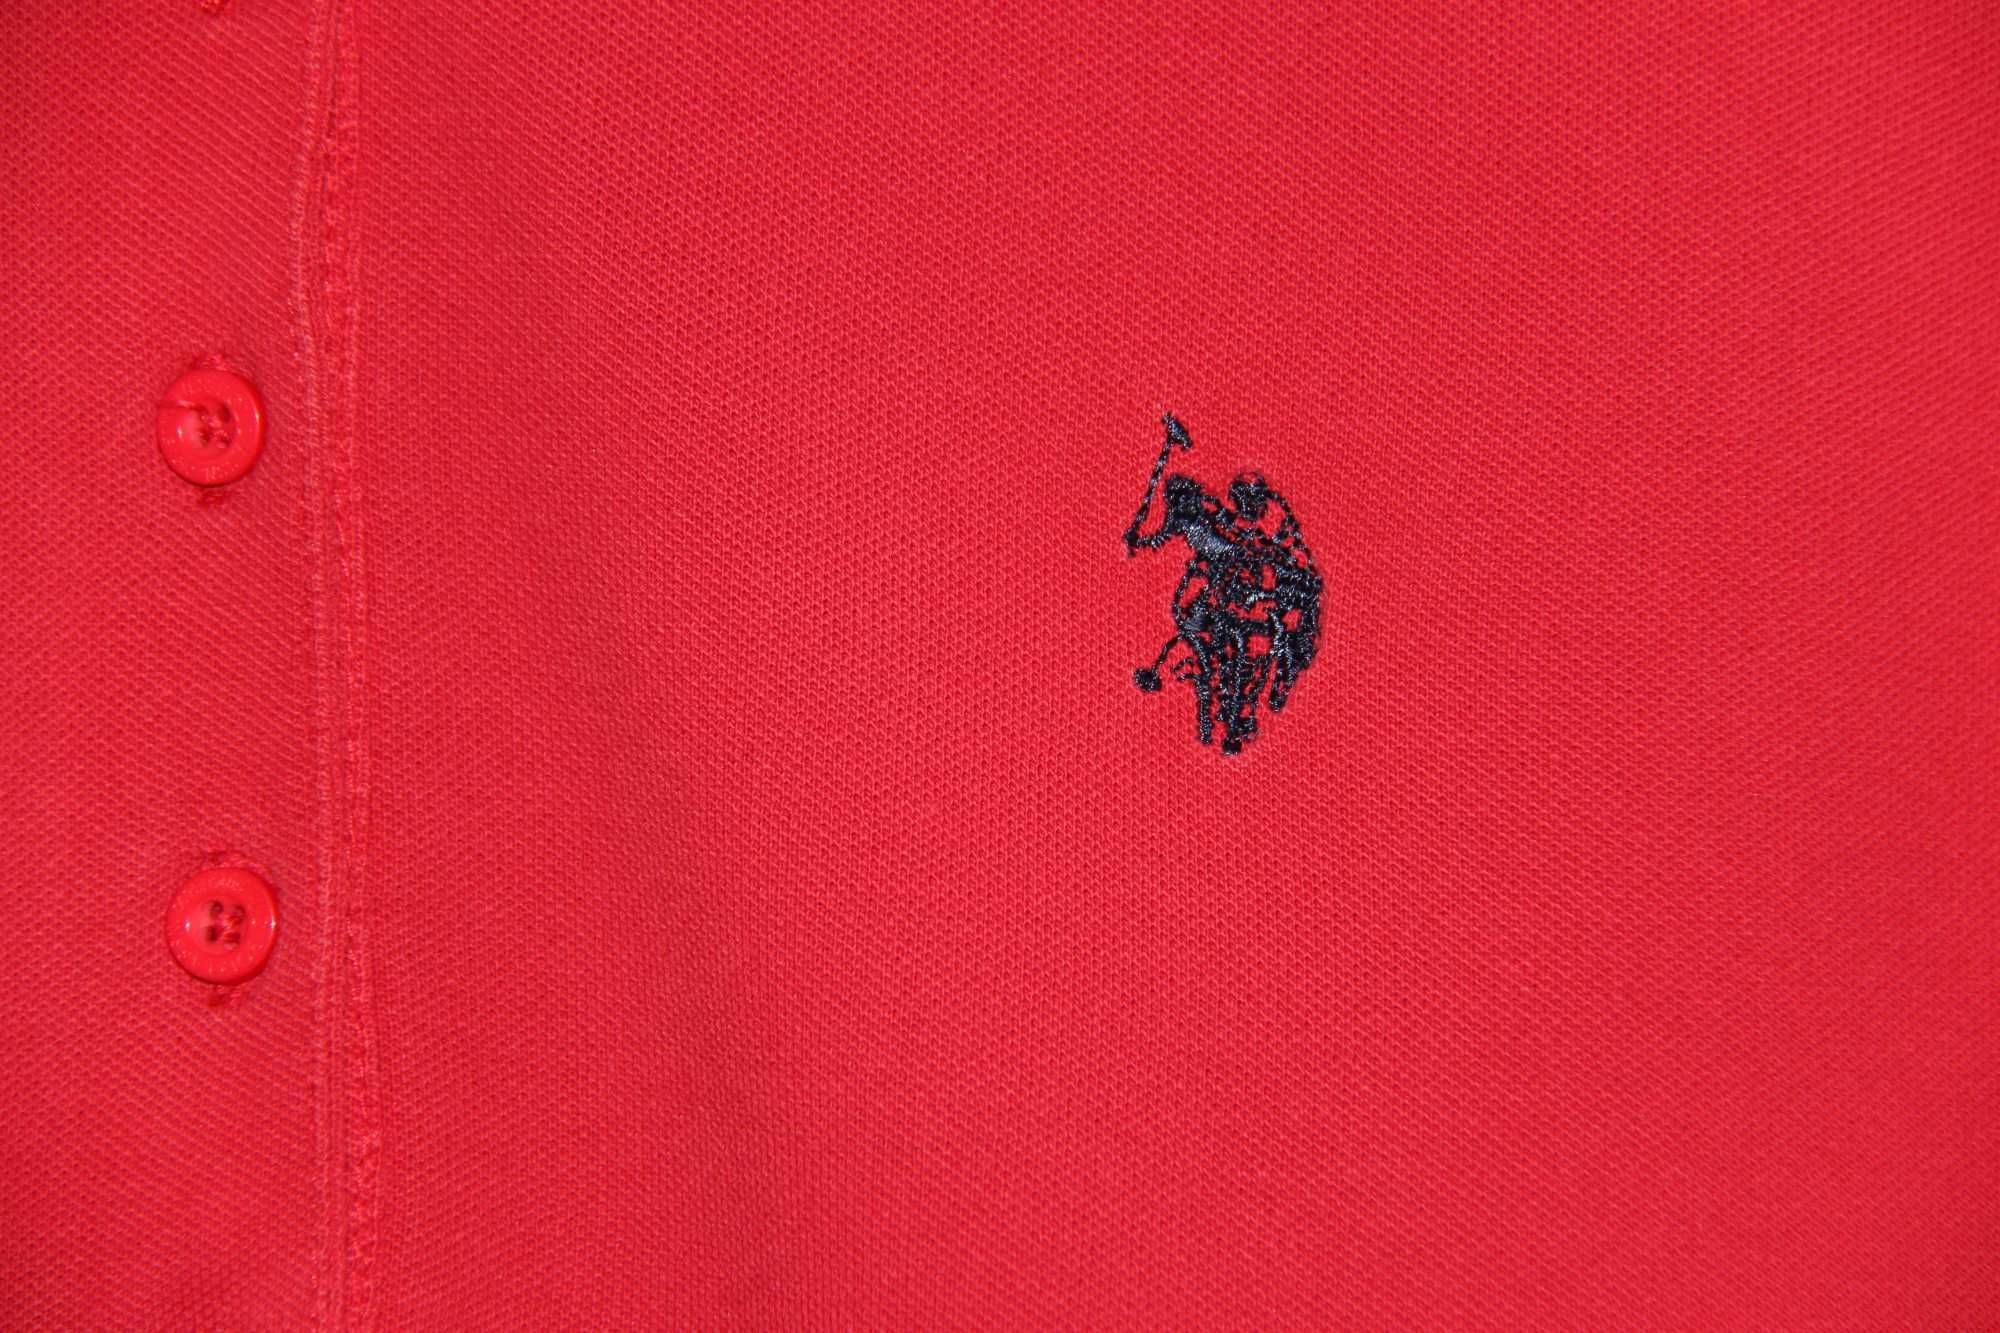 Czerwona koszulka polo US Polo ASSN